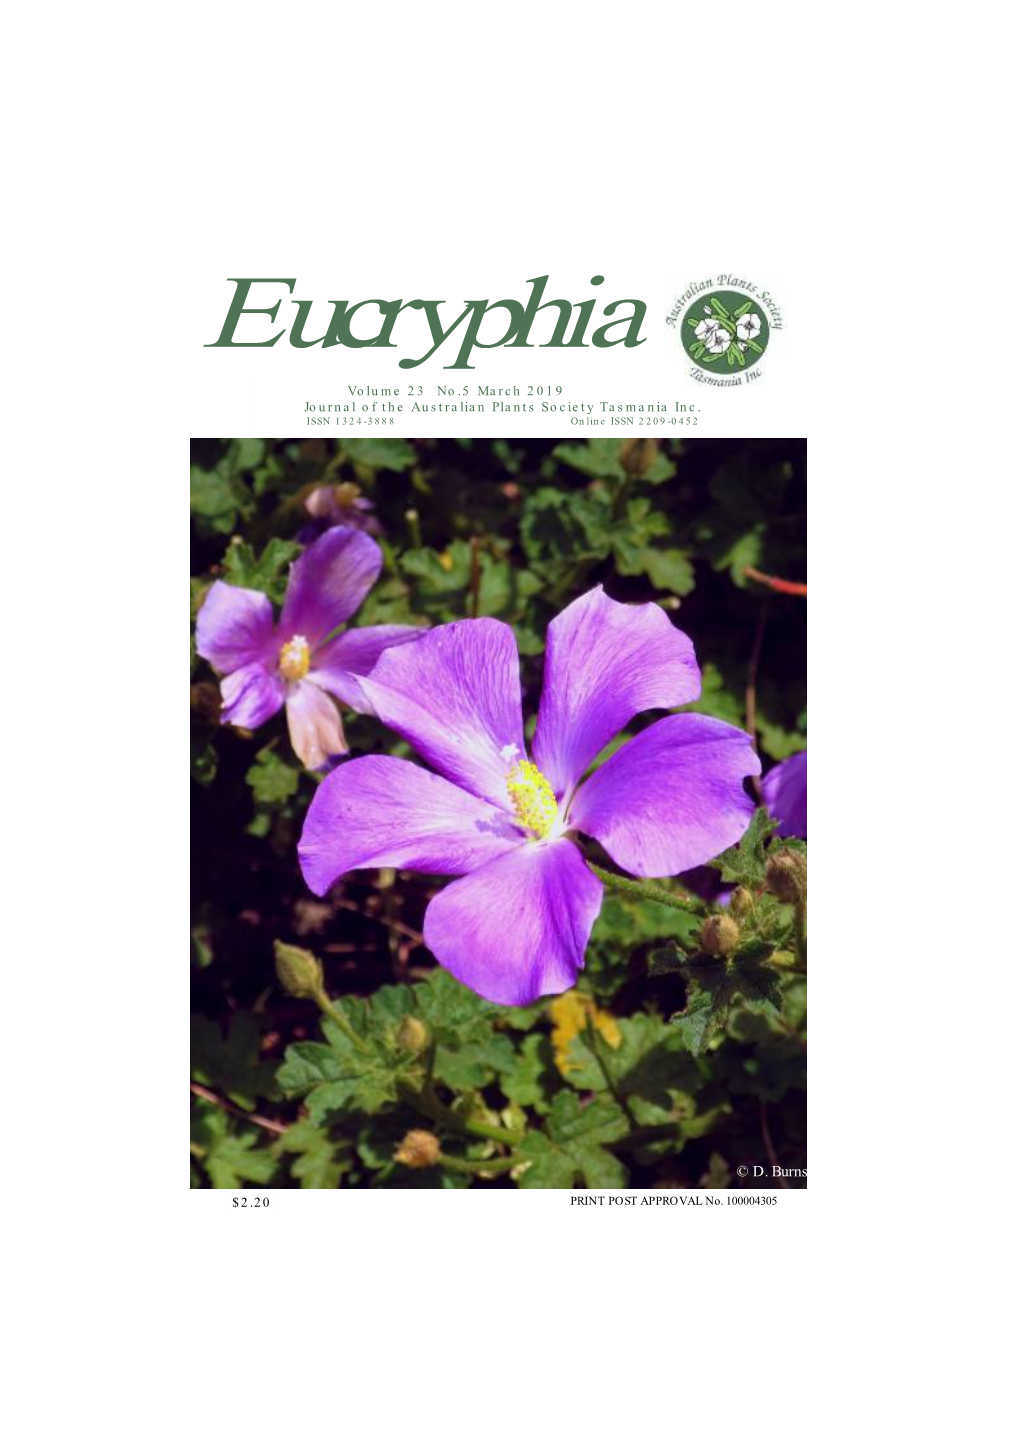 Eucryphia Volume 23 No.5 March 2019 Journal of the Australian Plants Society Tasmania Inc